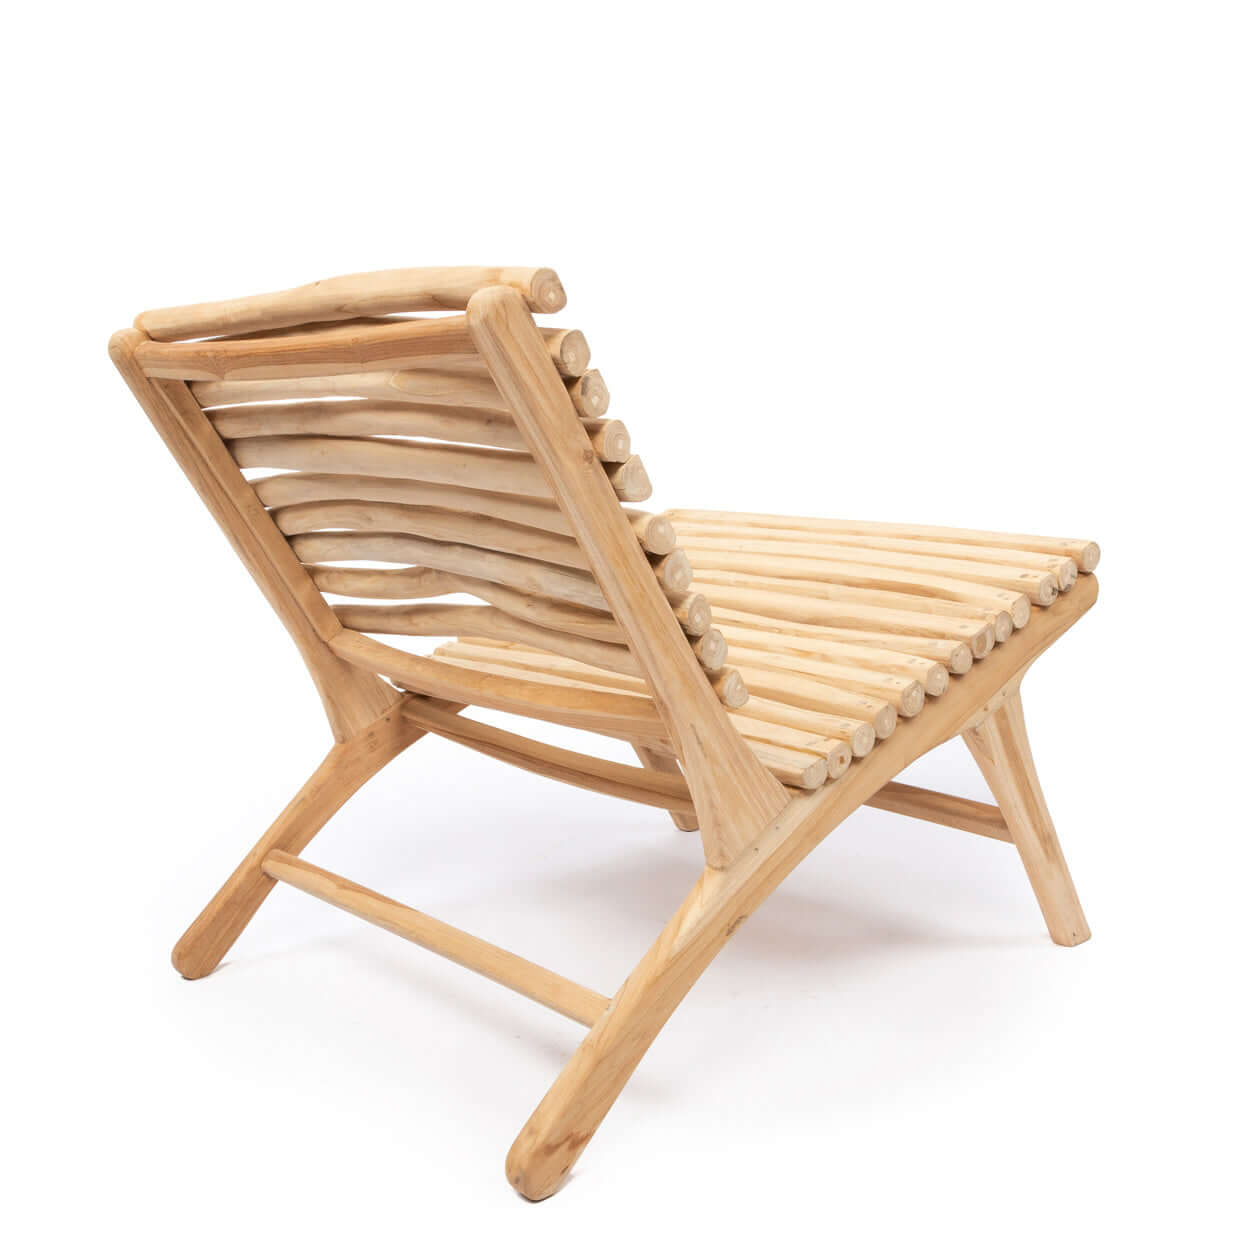 Boho stoel de Islander Bazar Bizar Kijk eens naar deze prachtige stoel met zijn unieke ontwerp! Handgemaakt met teakhouten spijlen in een natuurlijke organische vorm. Houdt u niet van luie zomeravonden in de tuin? Wij wel! Vooral in onze unieke stoel. Hoe